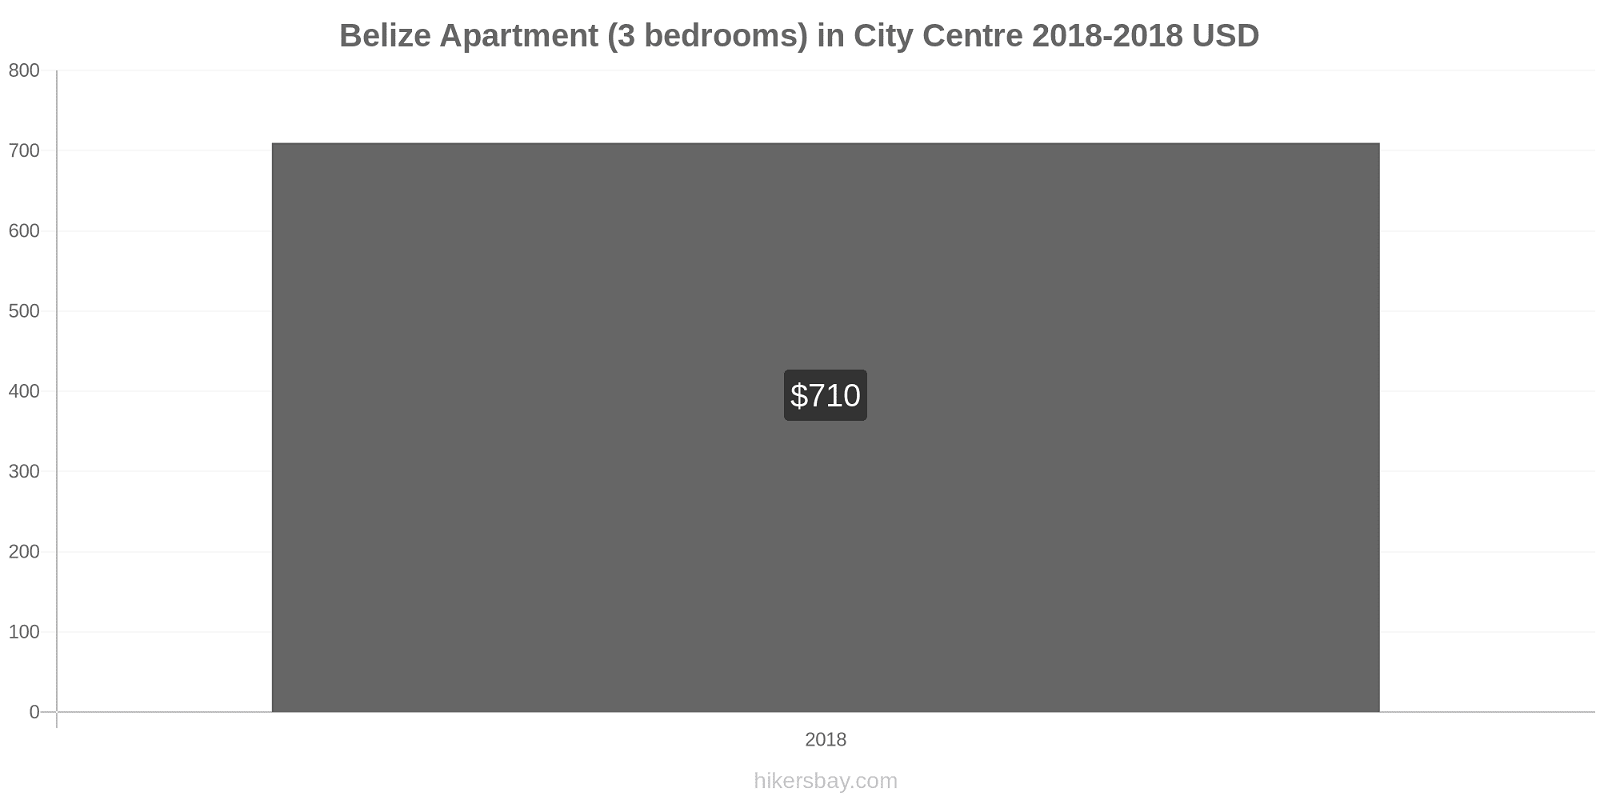 Belize price changes Apartment (3 bedrooms) in City Centre hikersbay.com